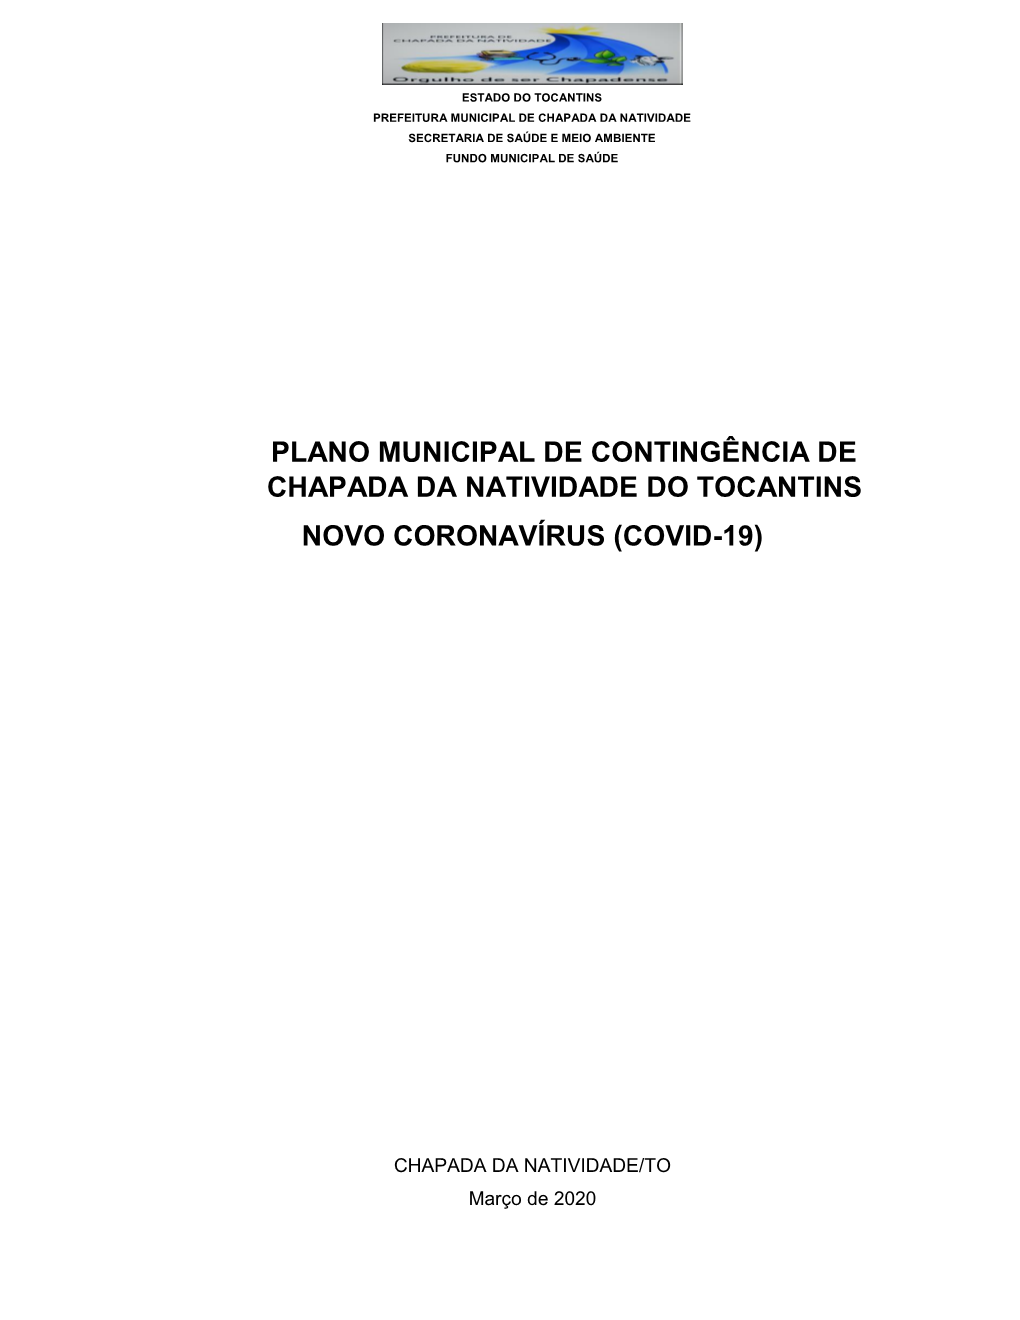 Plano Municipal De Contingência De Chapada Da Natividade Do Tocantins